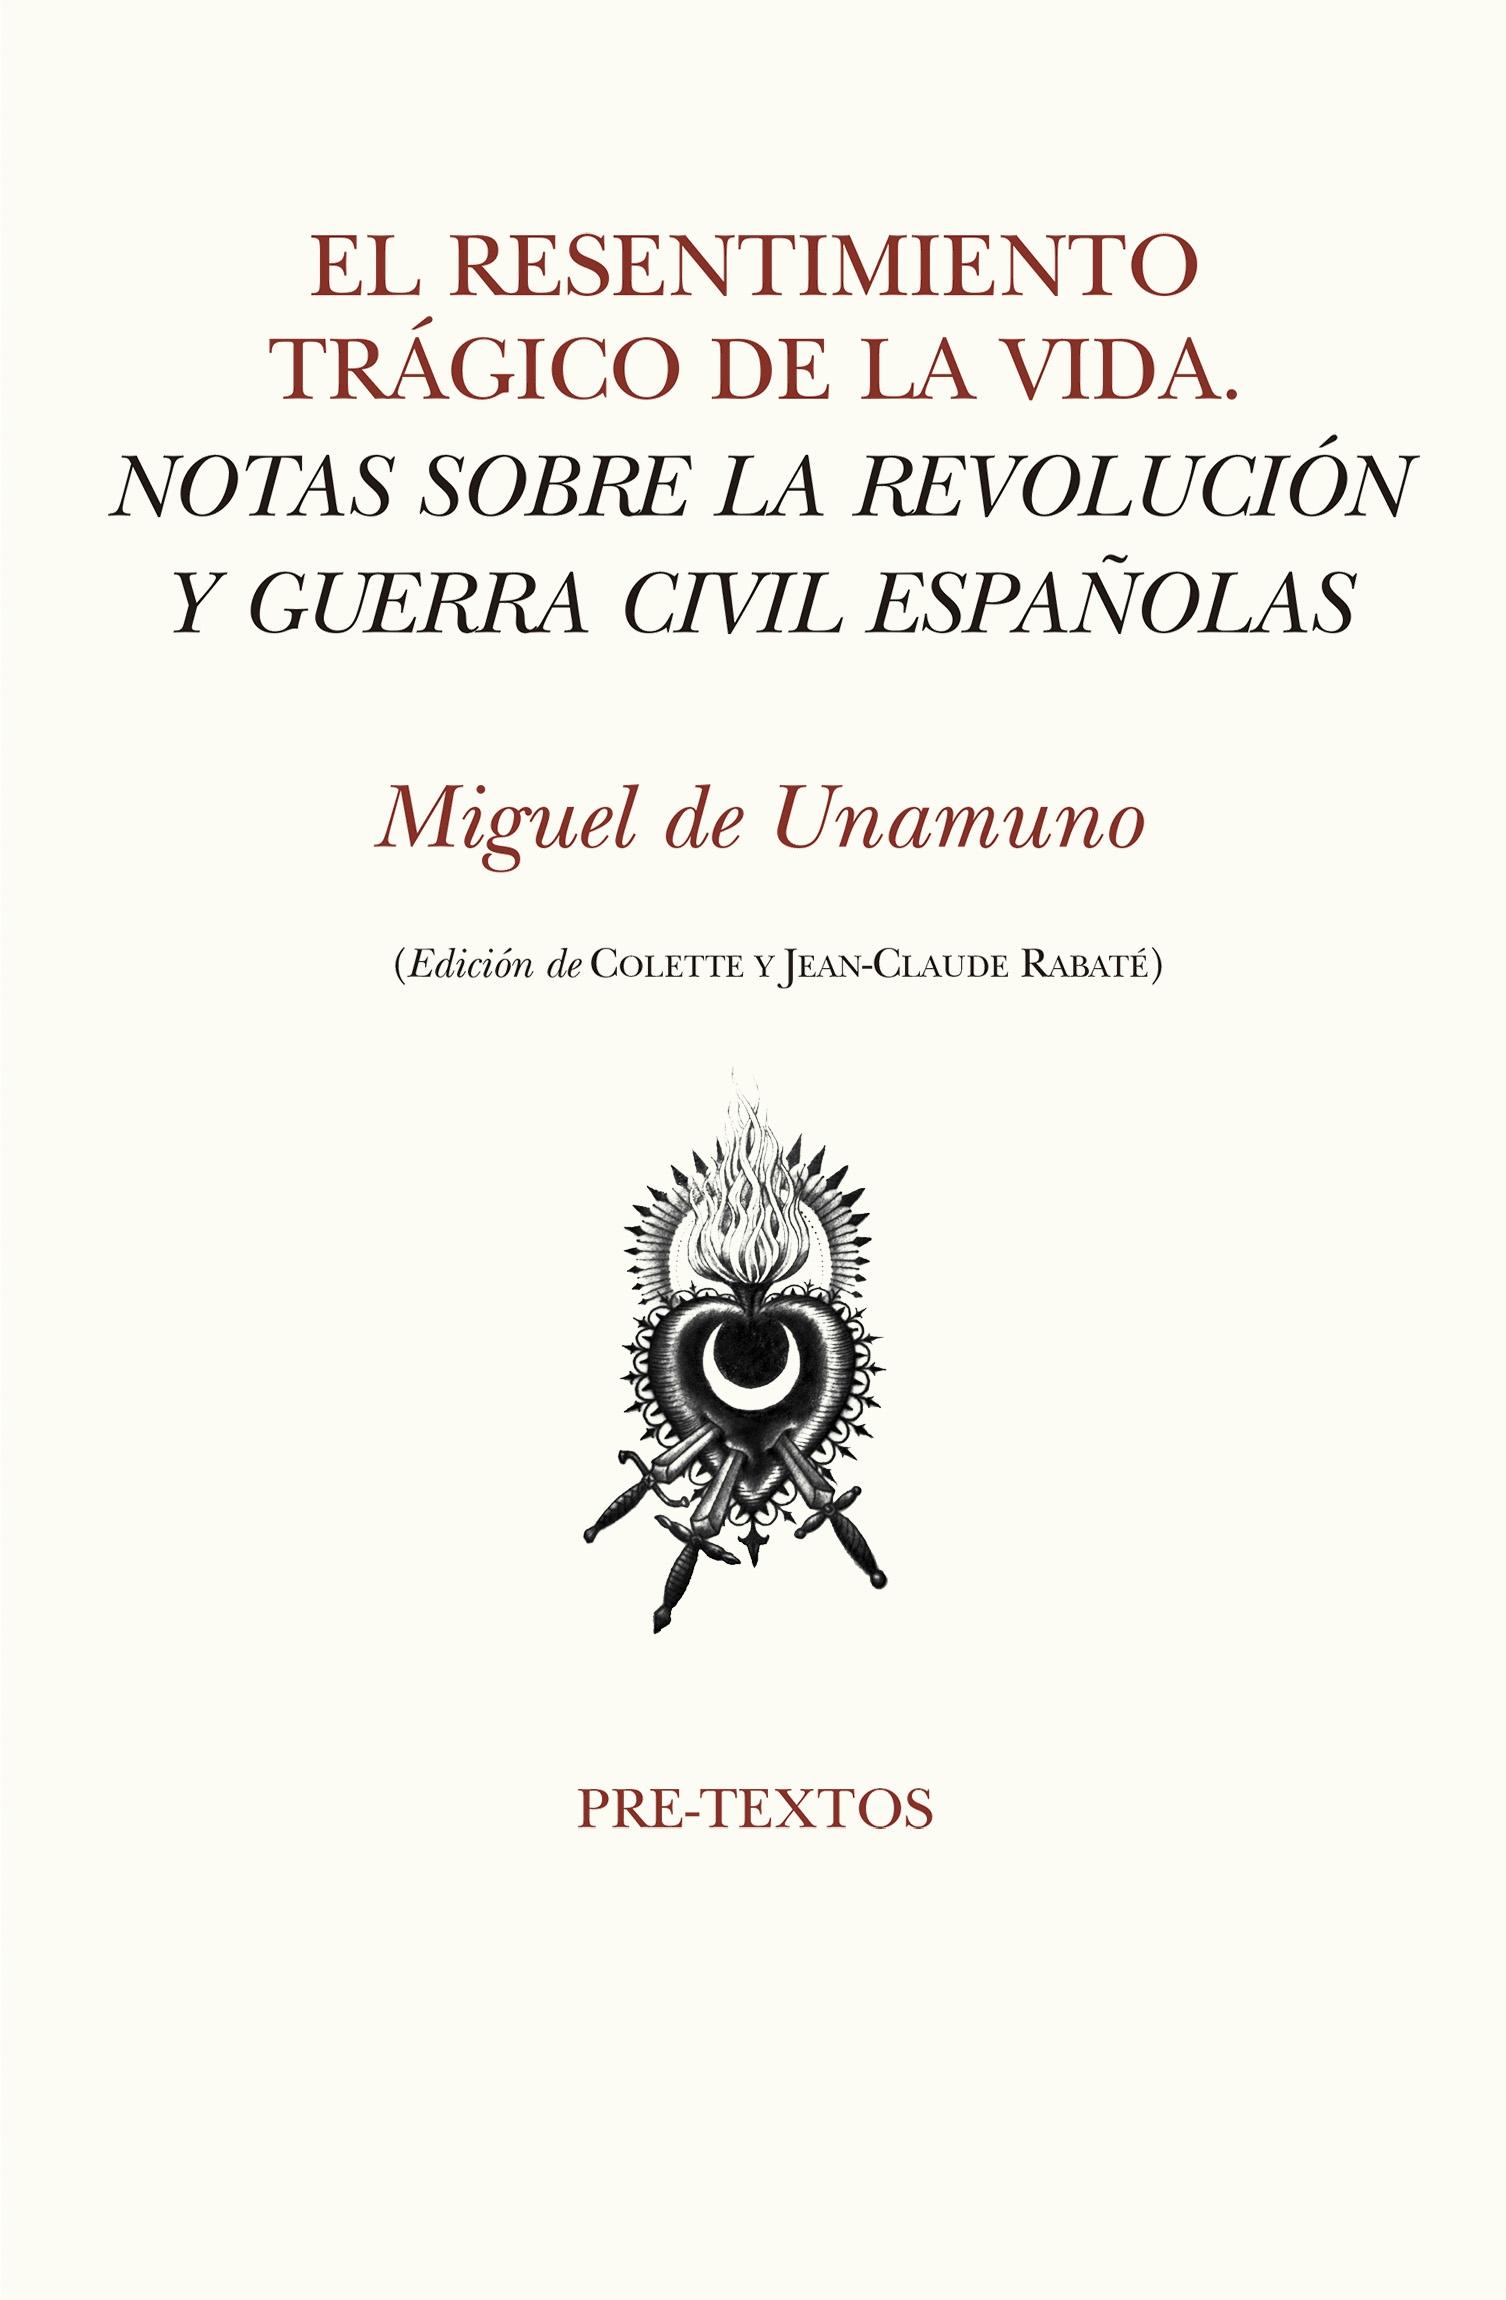 El Resentimiento Trágico de la Vida "Notas sobre la Revolución y Guerra Civil Españolas"